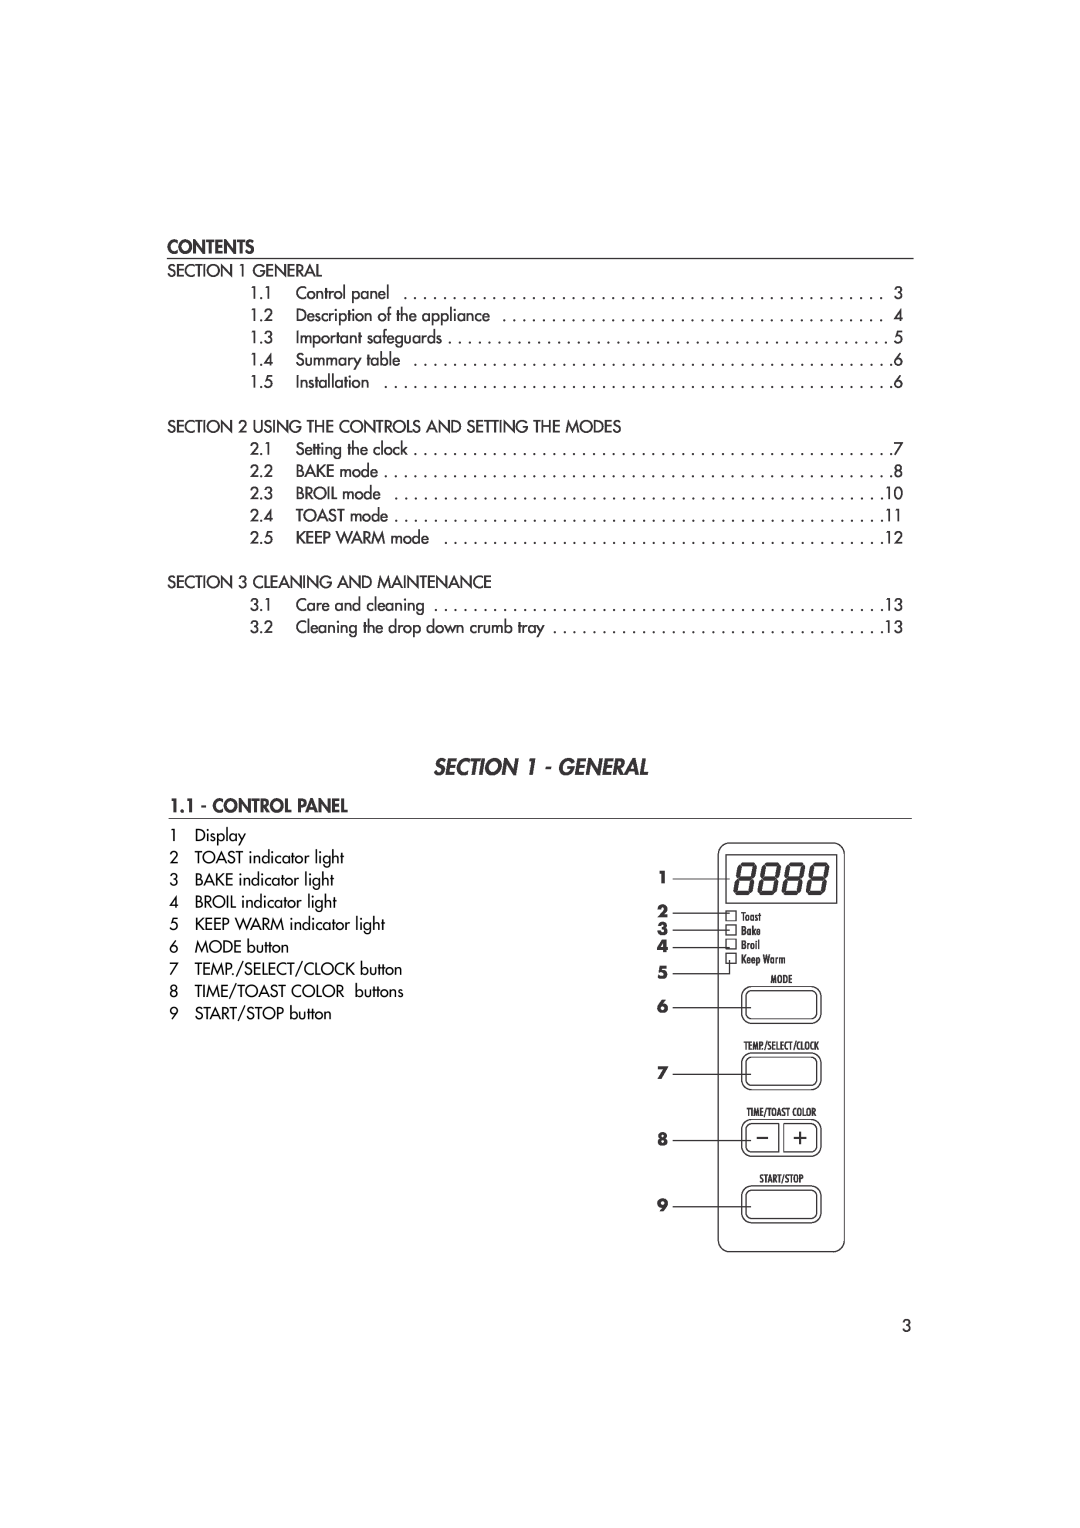 DeLonghi DO400 manual General, Contents, Control Panel 